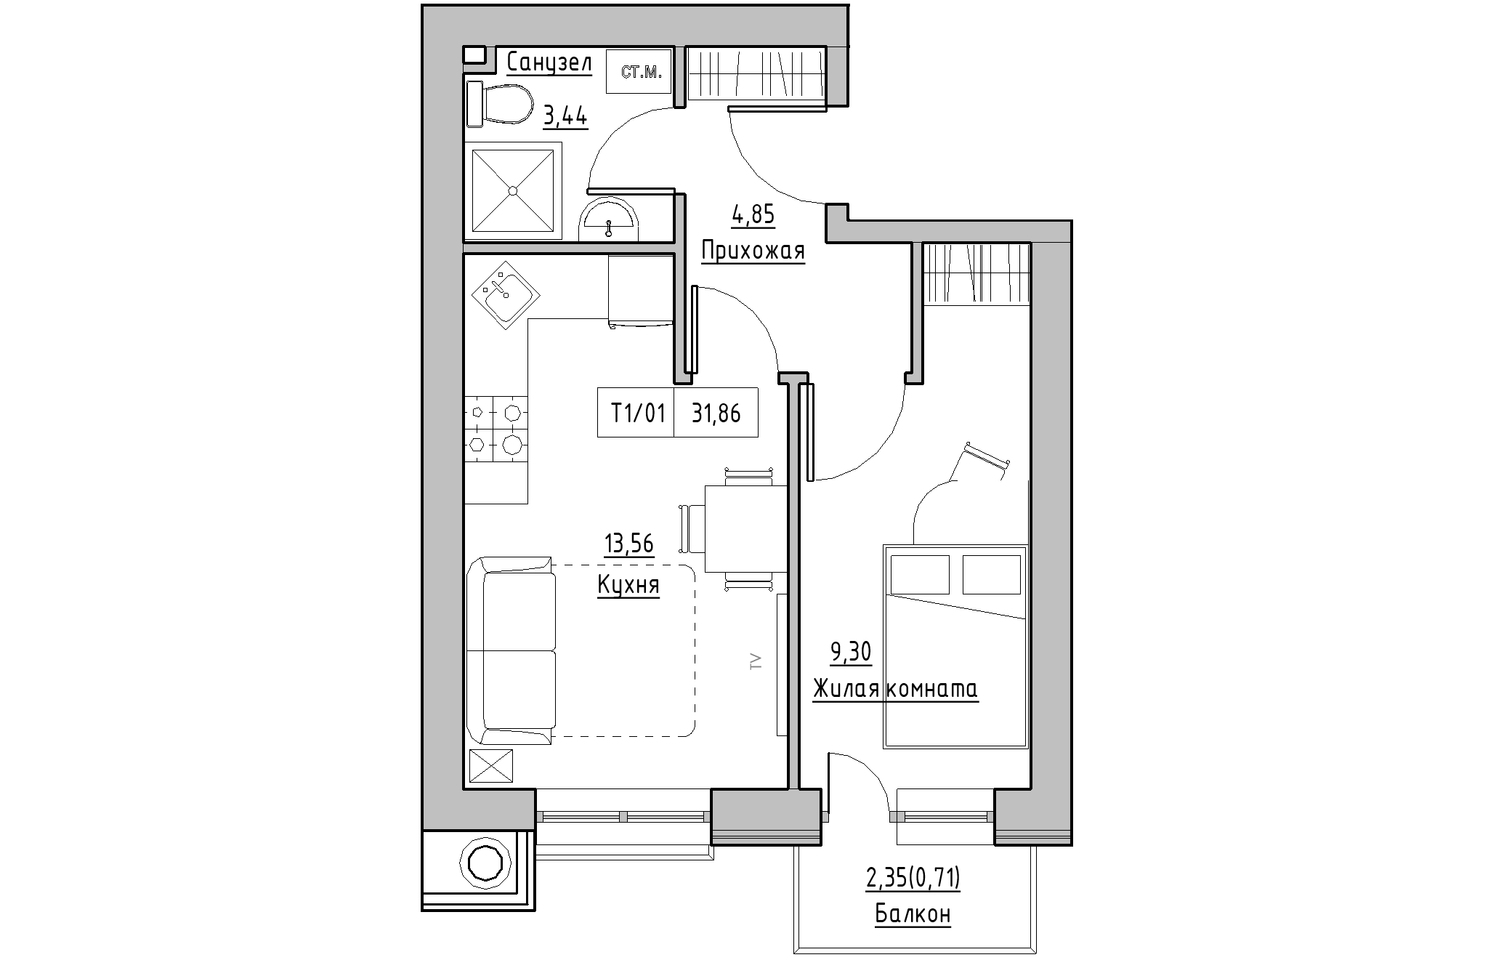 Планировка 1-к квартира площей 31.86м2, KS-010-05/0003.